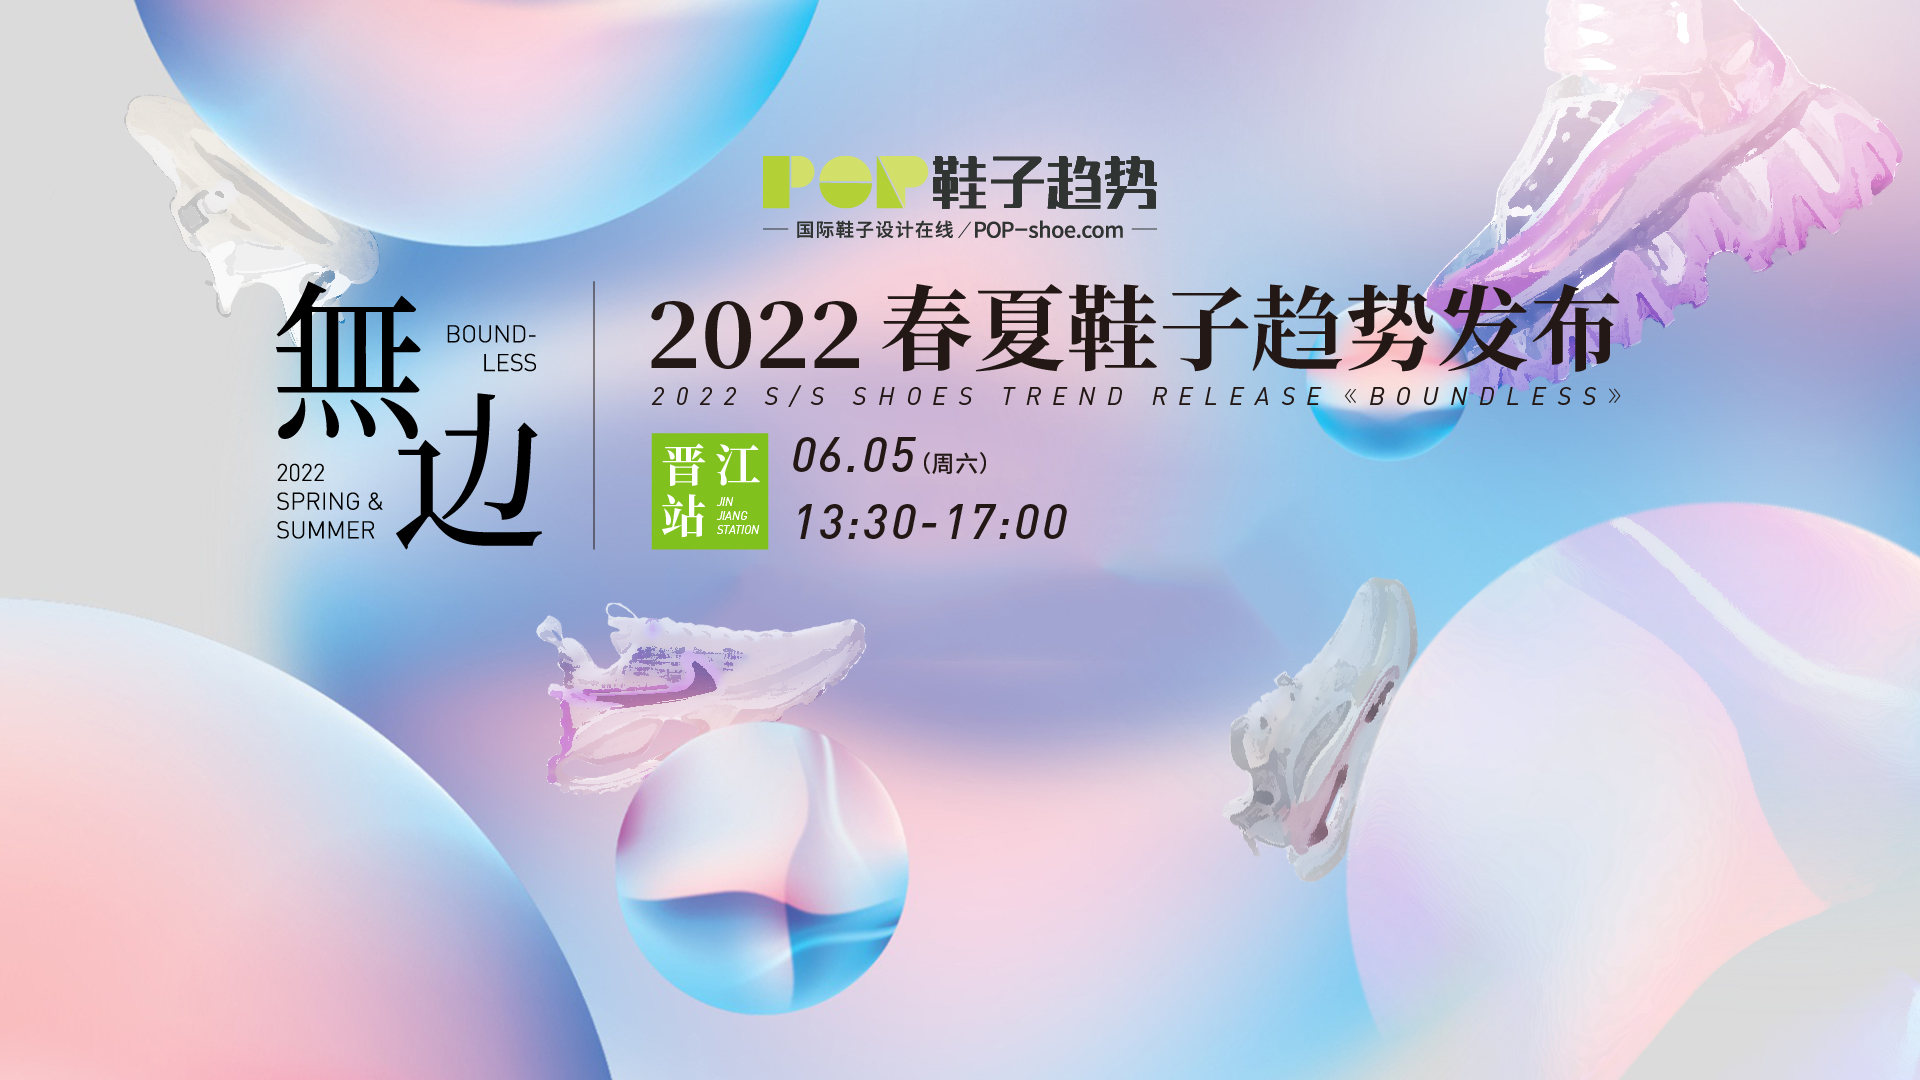 2022春夏鞋子主题趋势发布会----晋江站